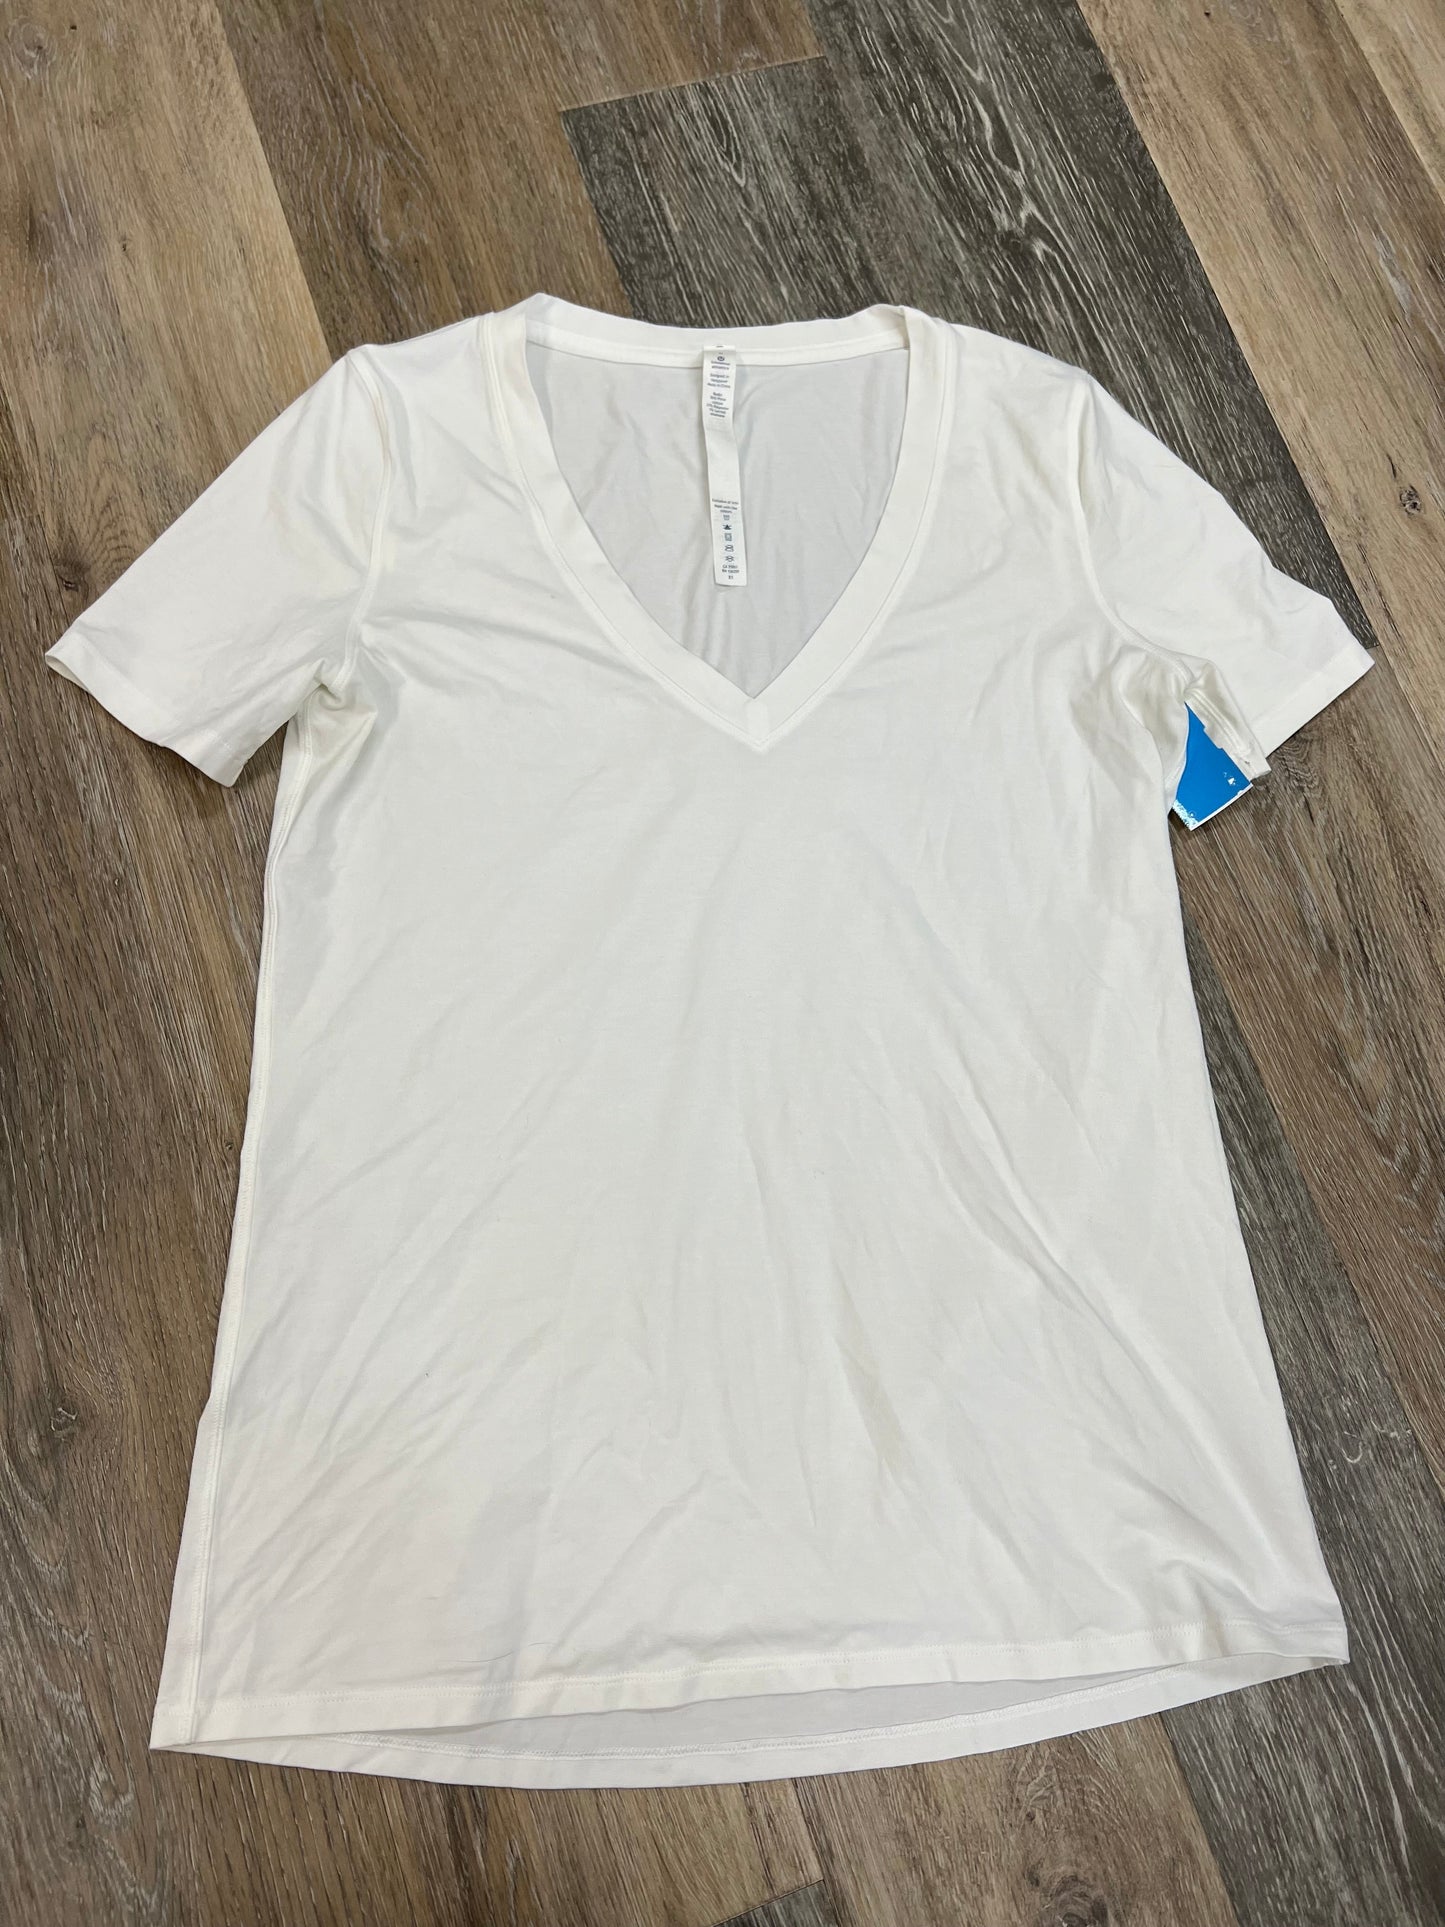 White Athletic Top Short Sleeve Lululemon, Size 6